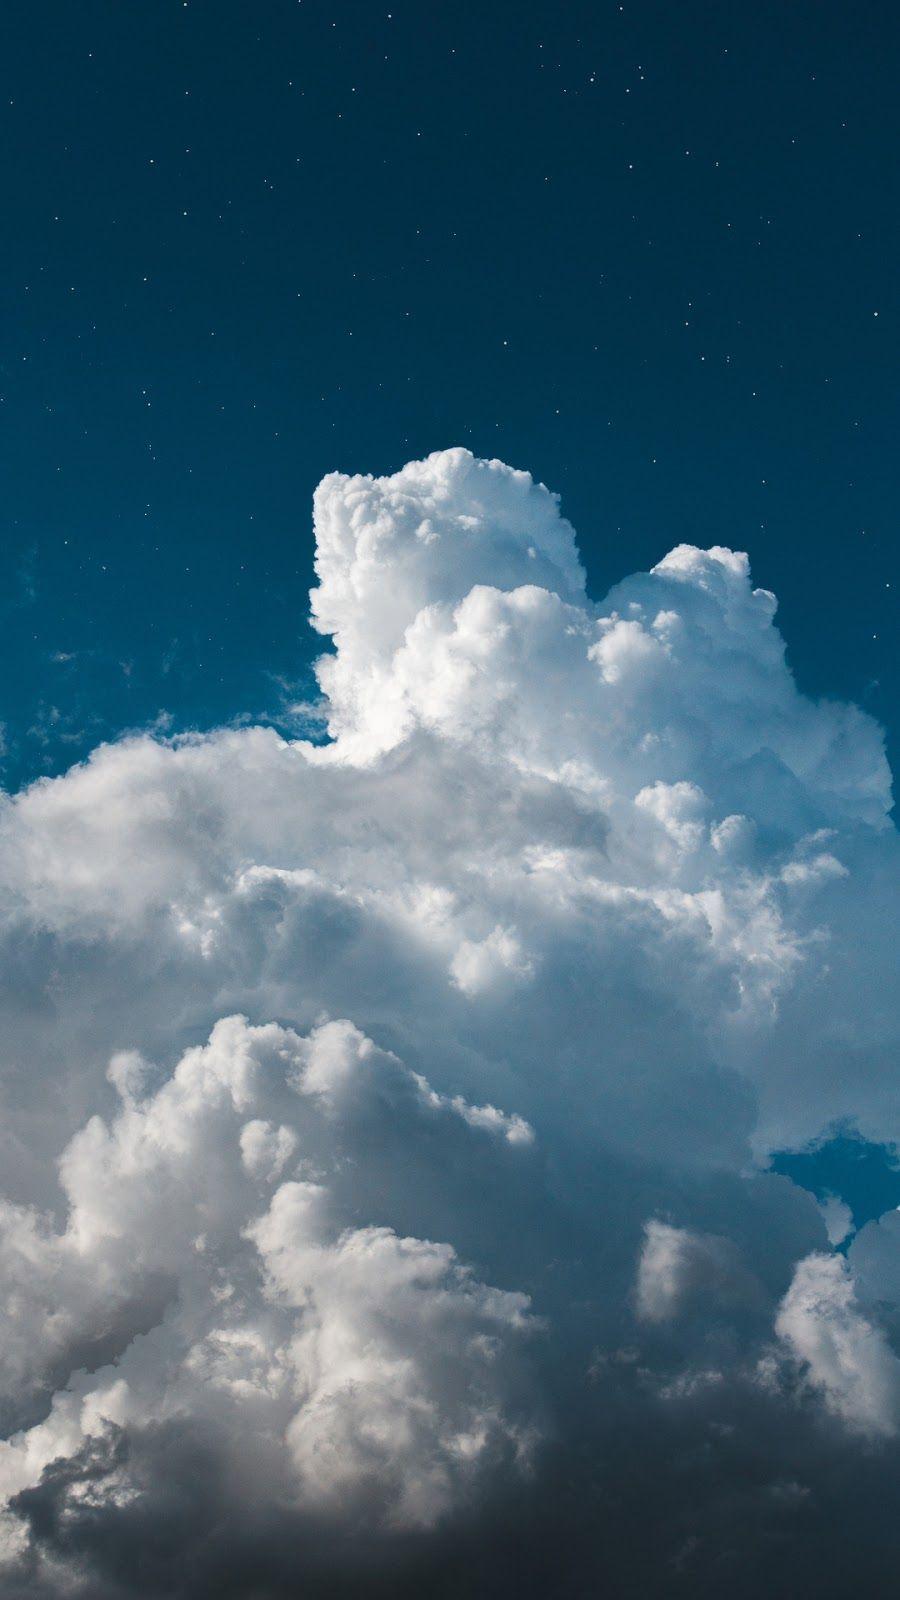 Fluffy Clouds Wallpapers: Hình nền Fluffy Clouds sẽ đưa bạn đến một thế giới của những đám mây phồn thực và đầy sống động. Mỗi bức hình đều đưa bạn đến với một khoảng trời bình yên và đầy mơ mộng, mang lại cho bạn cảm giác thoải mái và thư giãn.